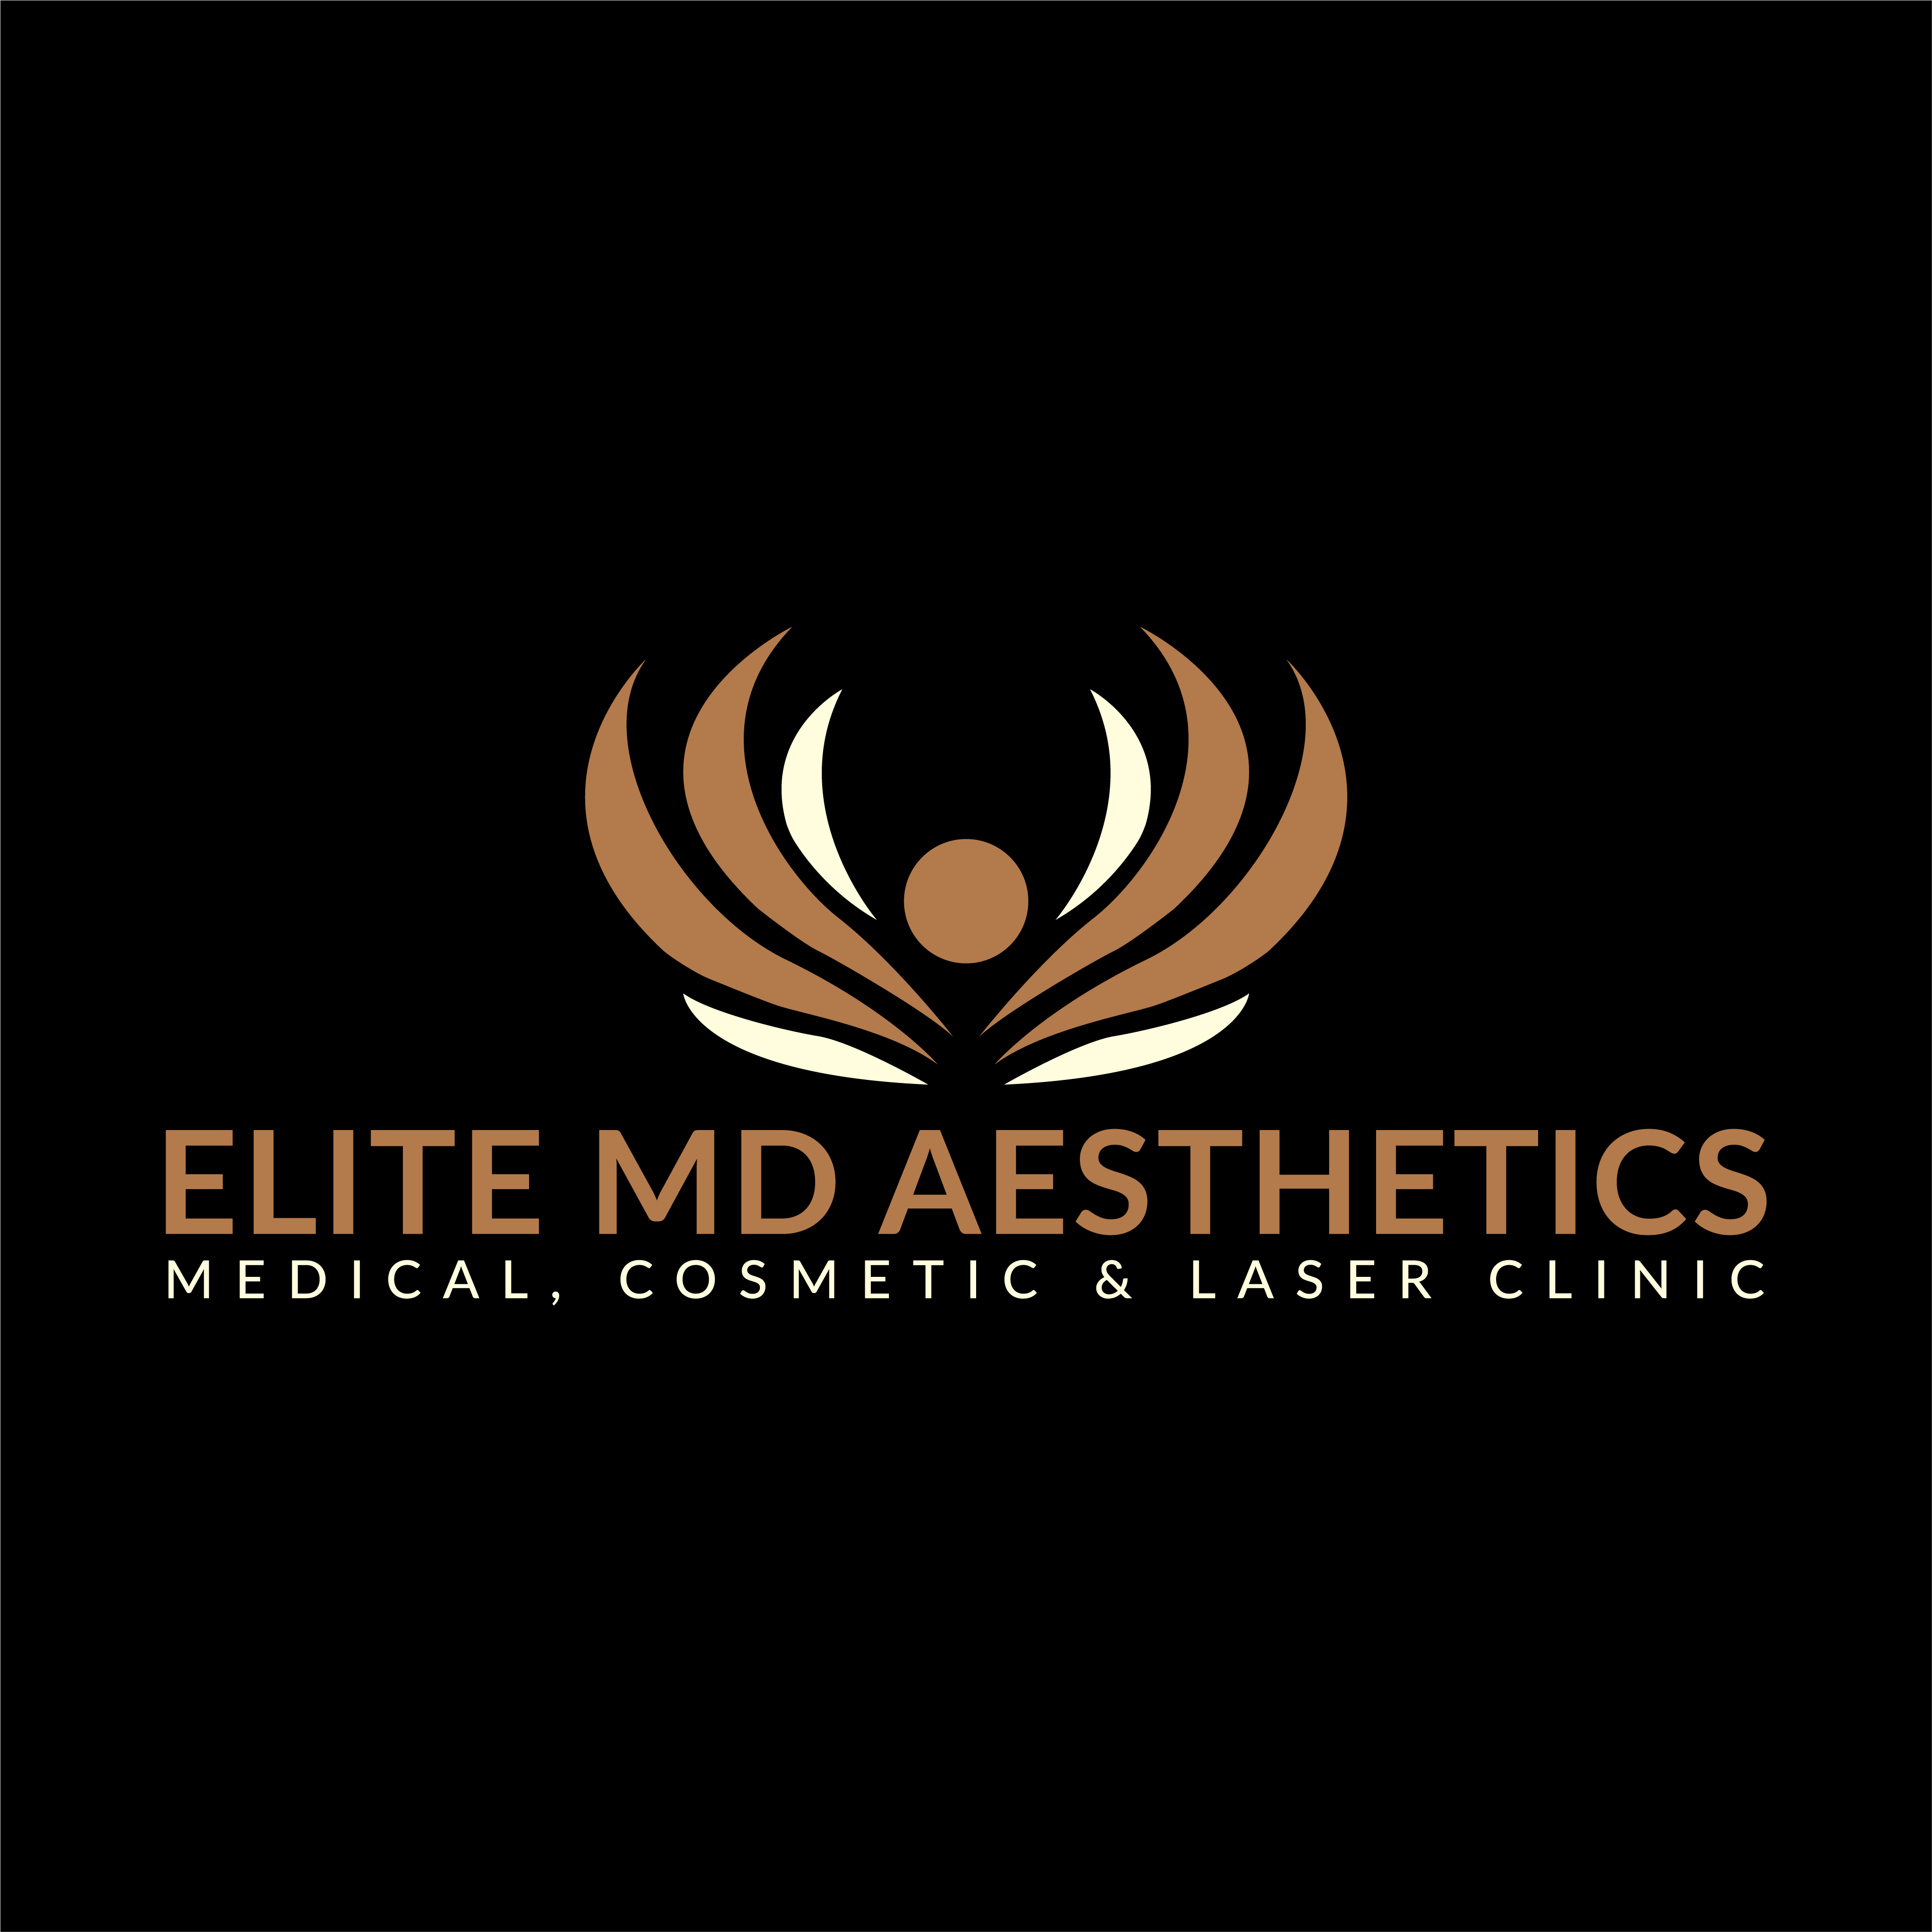 EliteMD Aesthetics